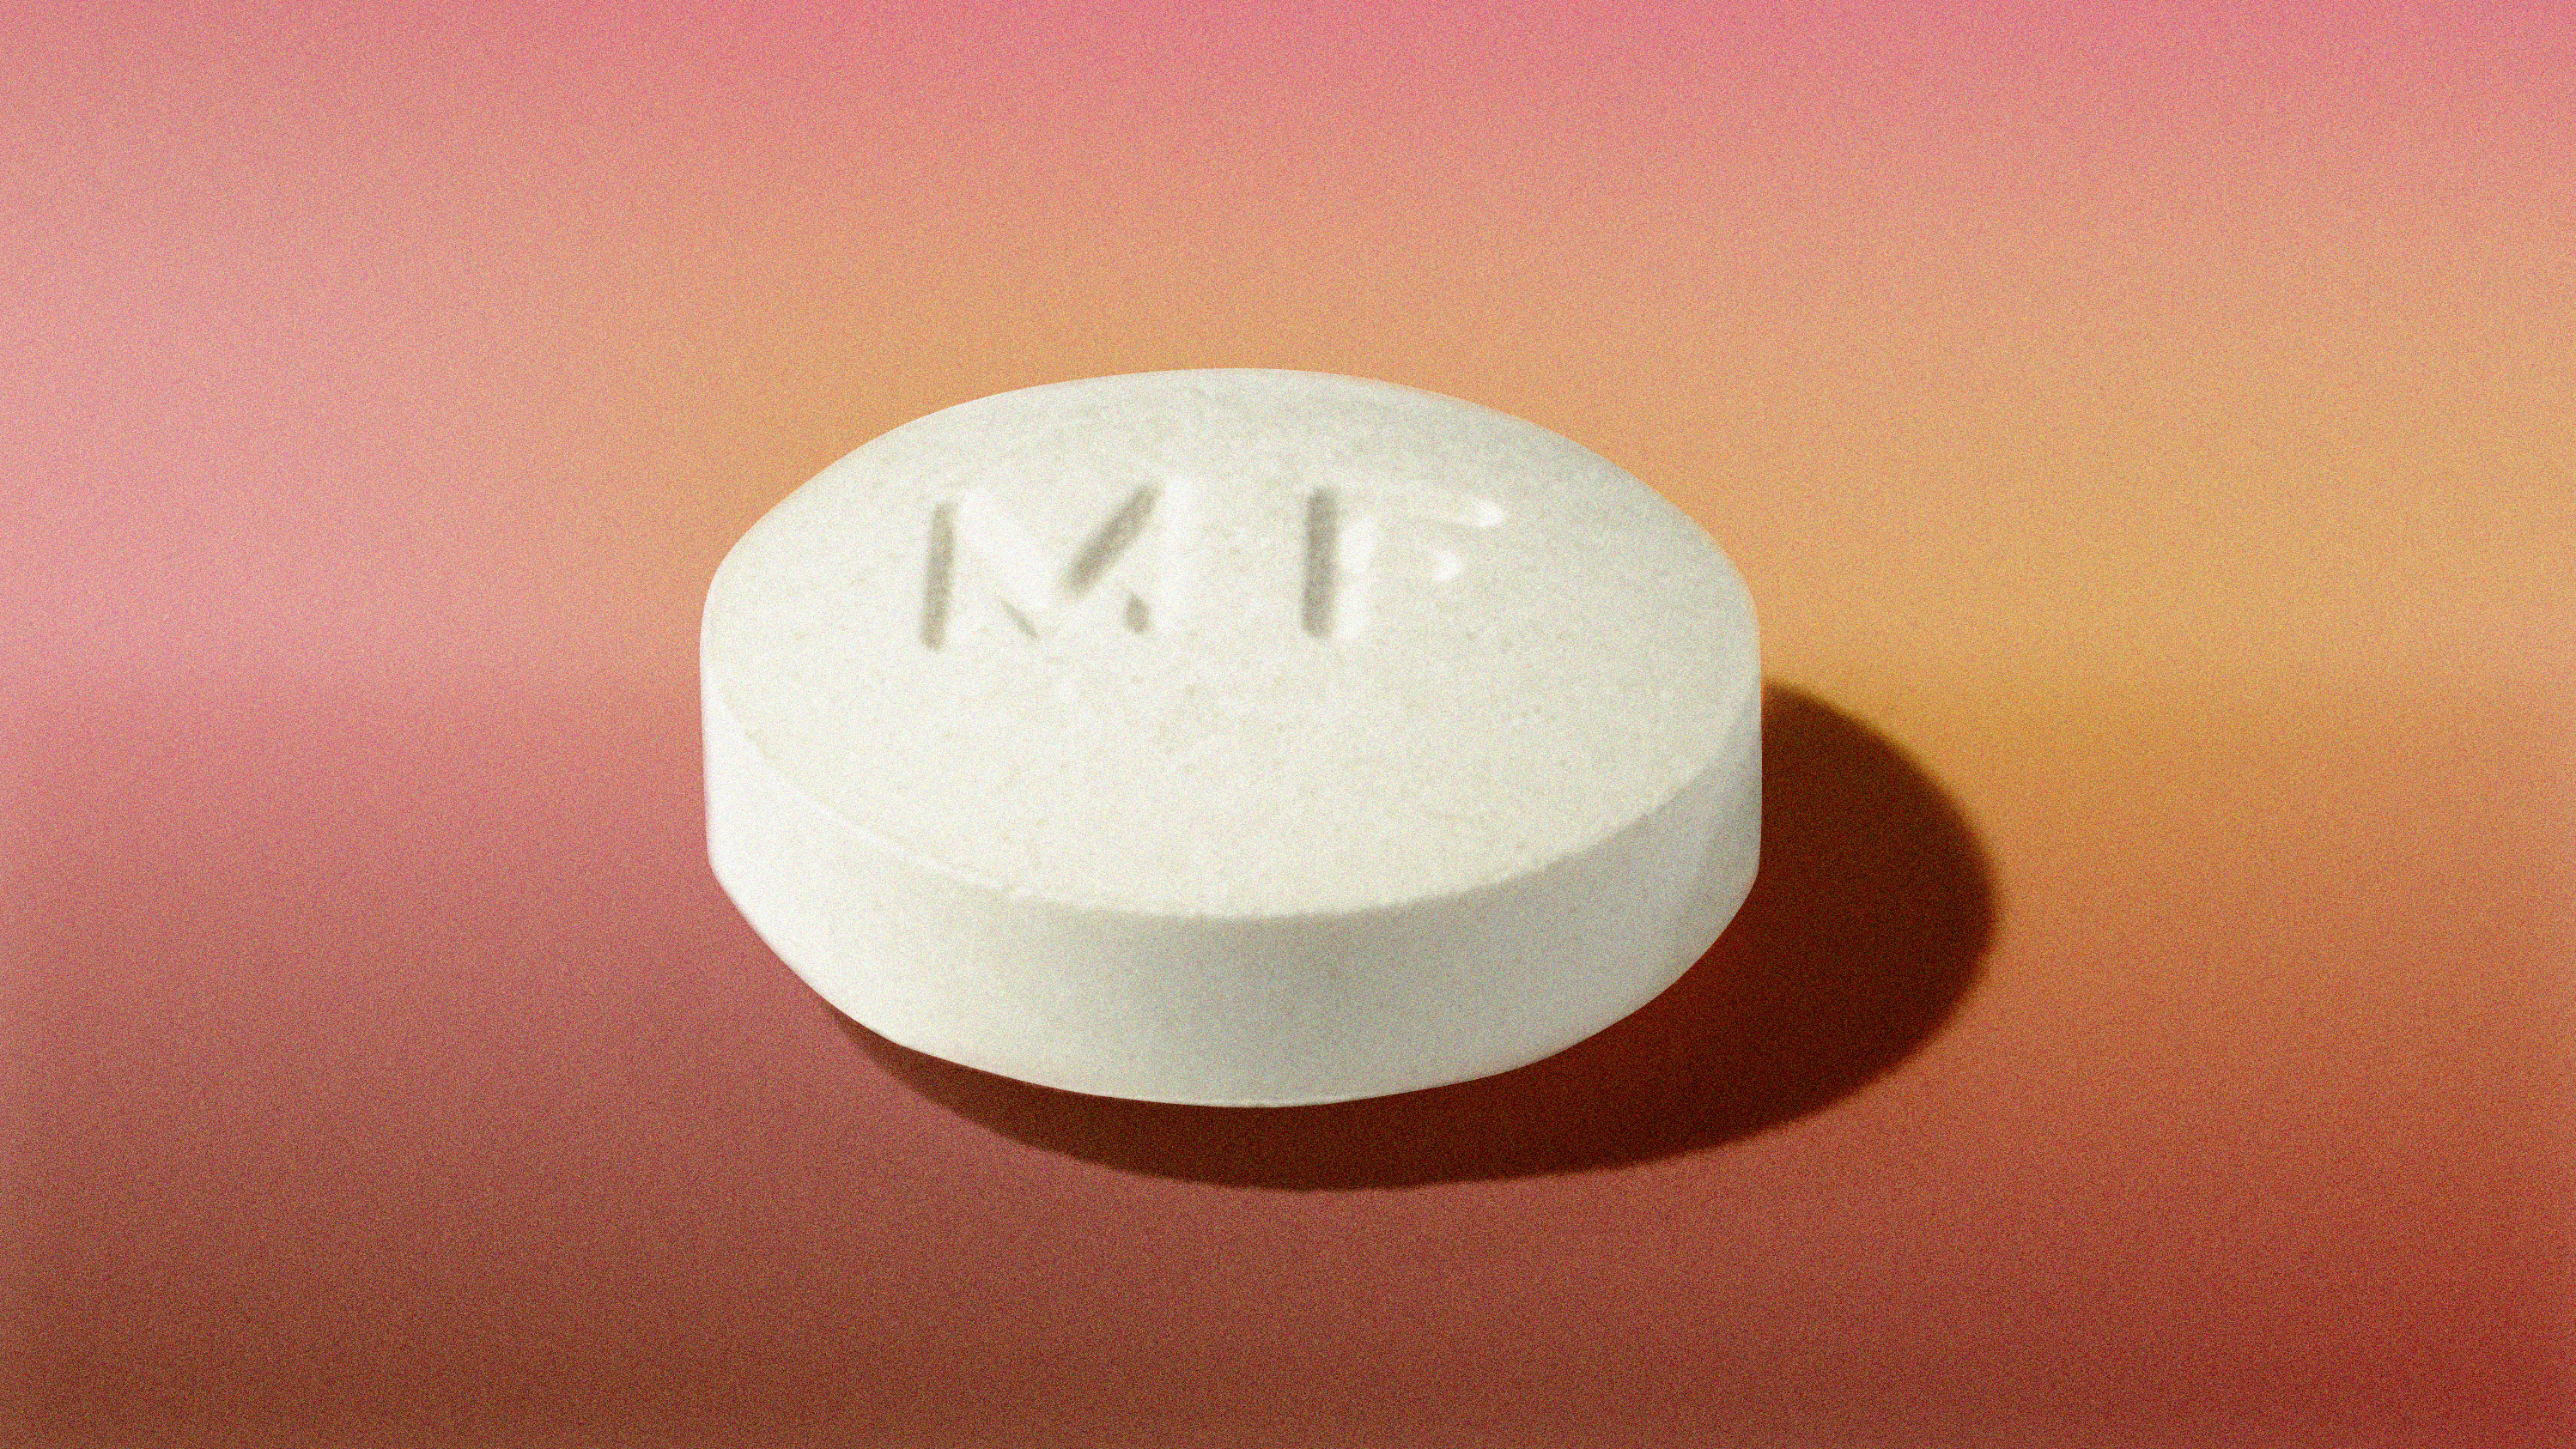 Mifiprex pill